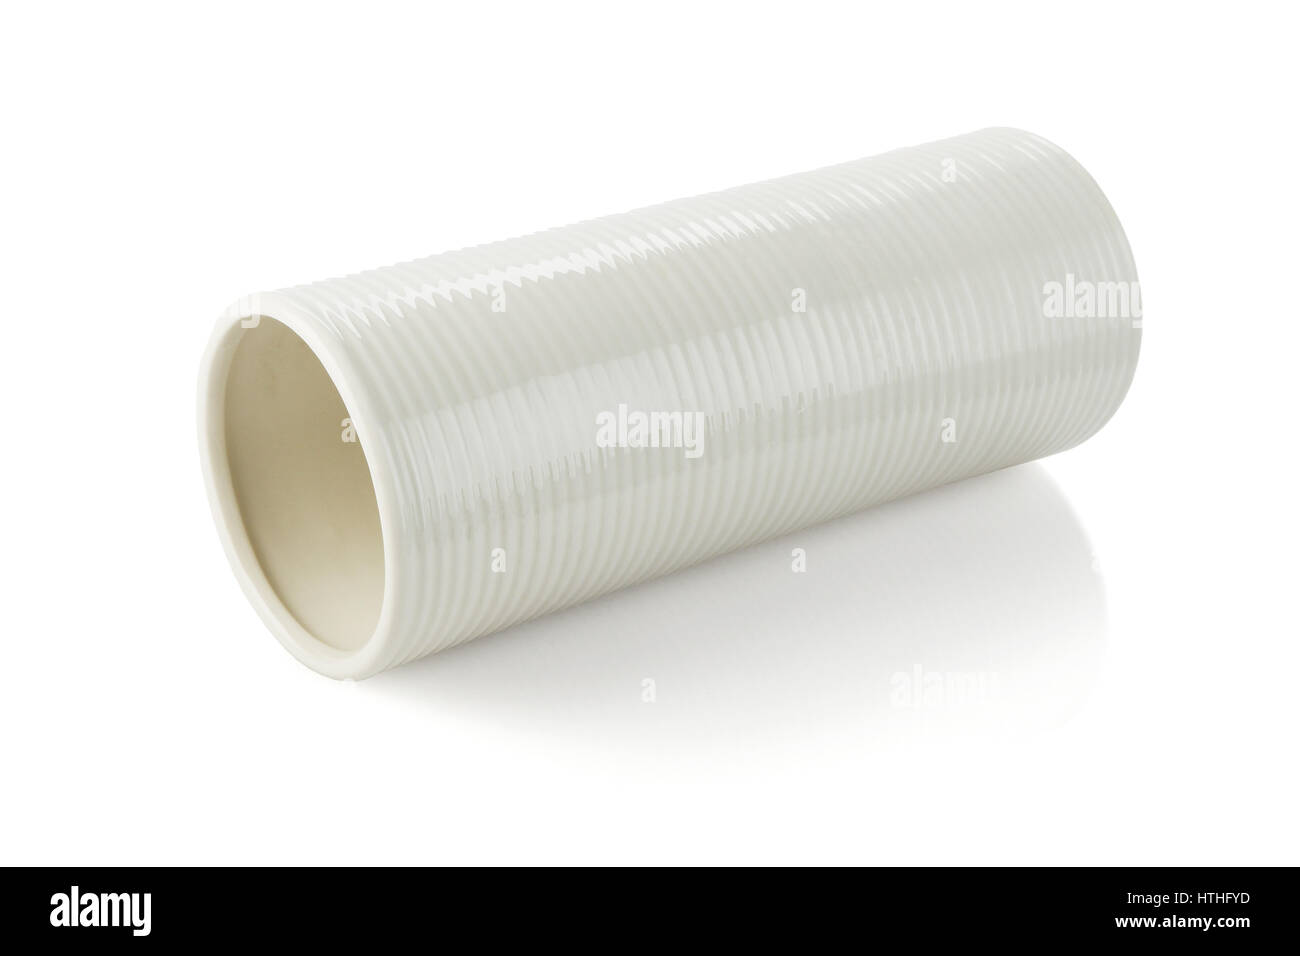 Cylindrical Shape Vase Lying on White Background Stock Photo